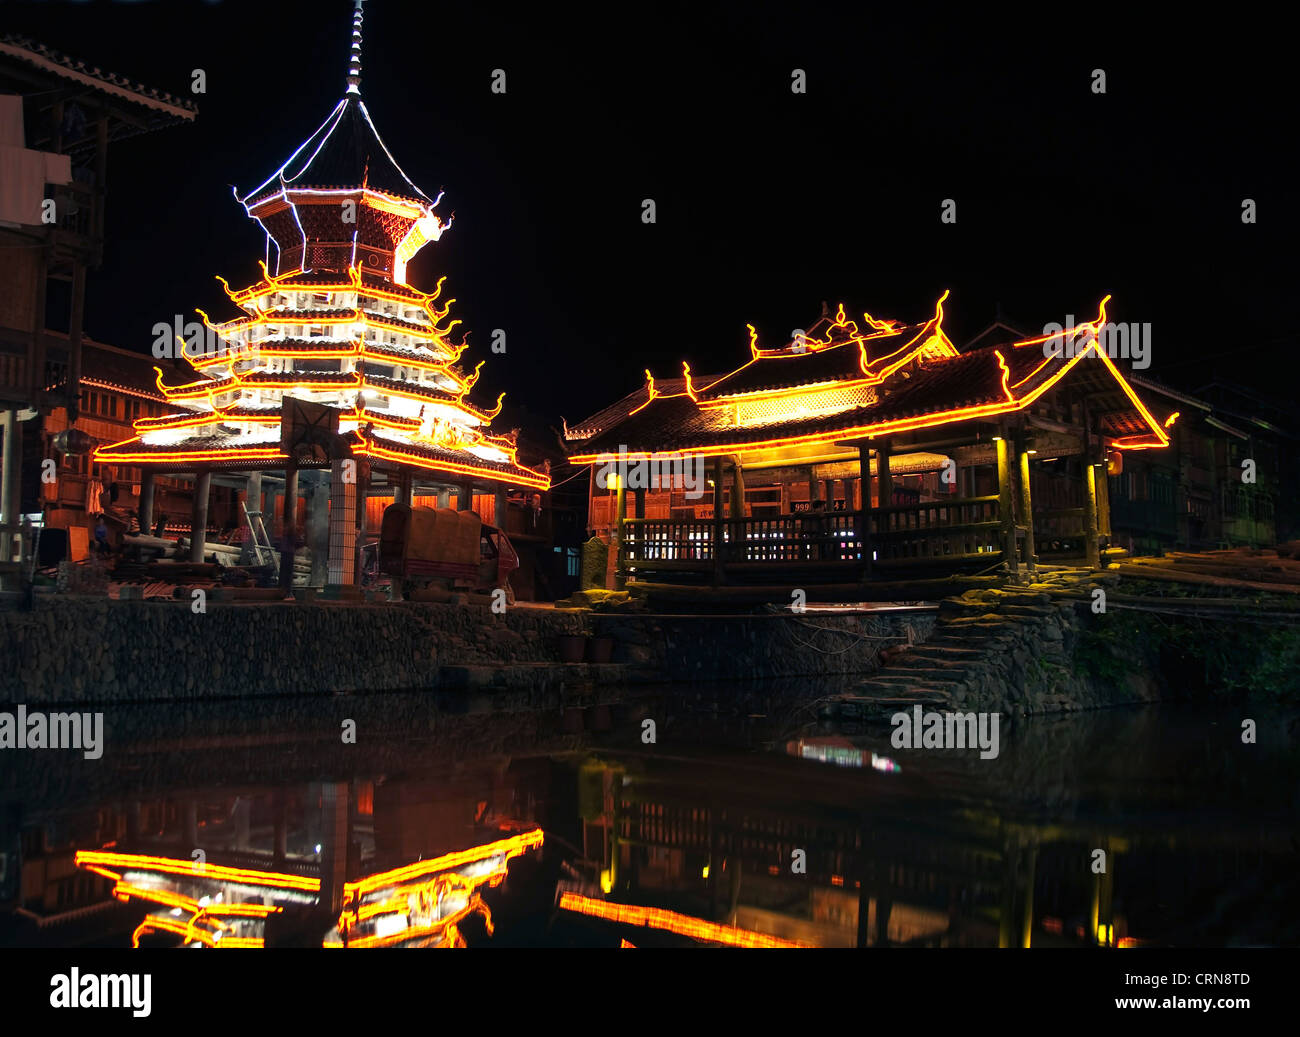 Village of Zhaoxing by night, Guizhou province - China Stock Photo